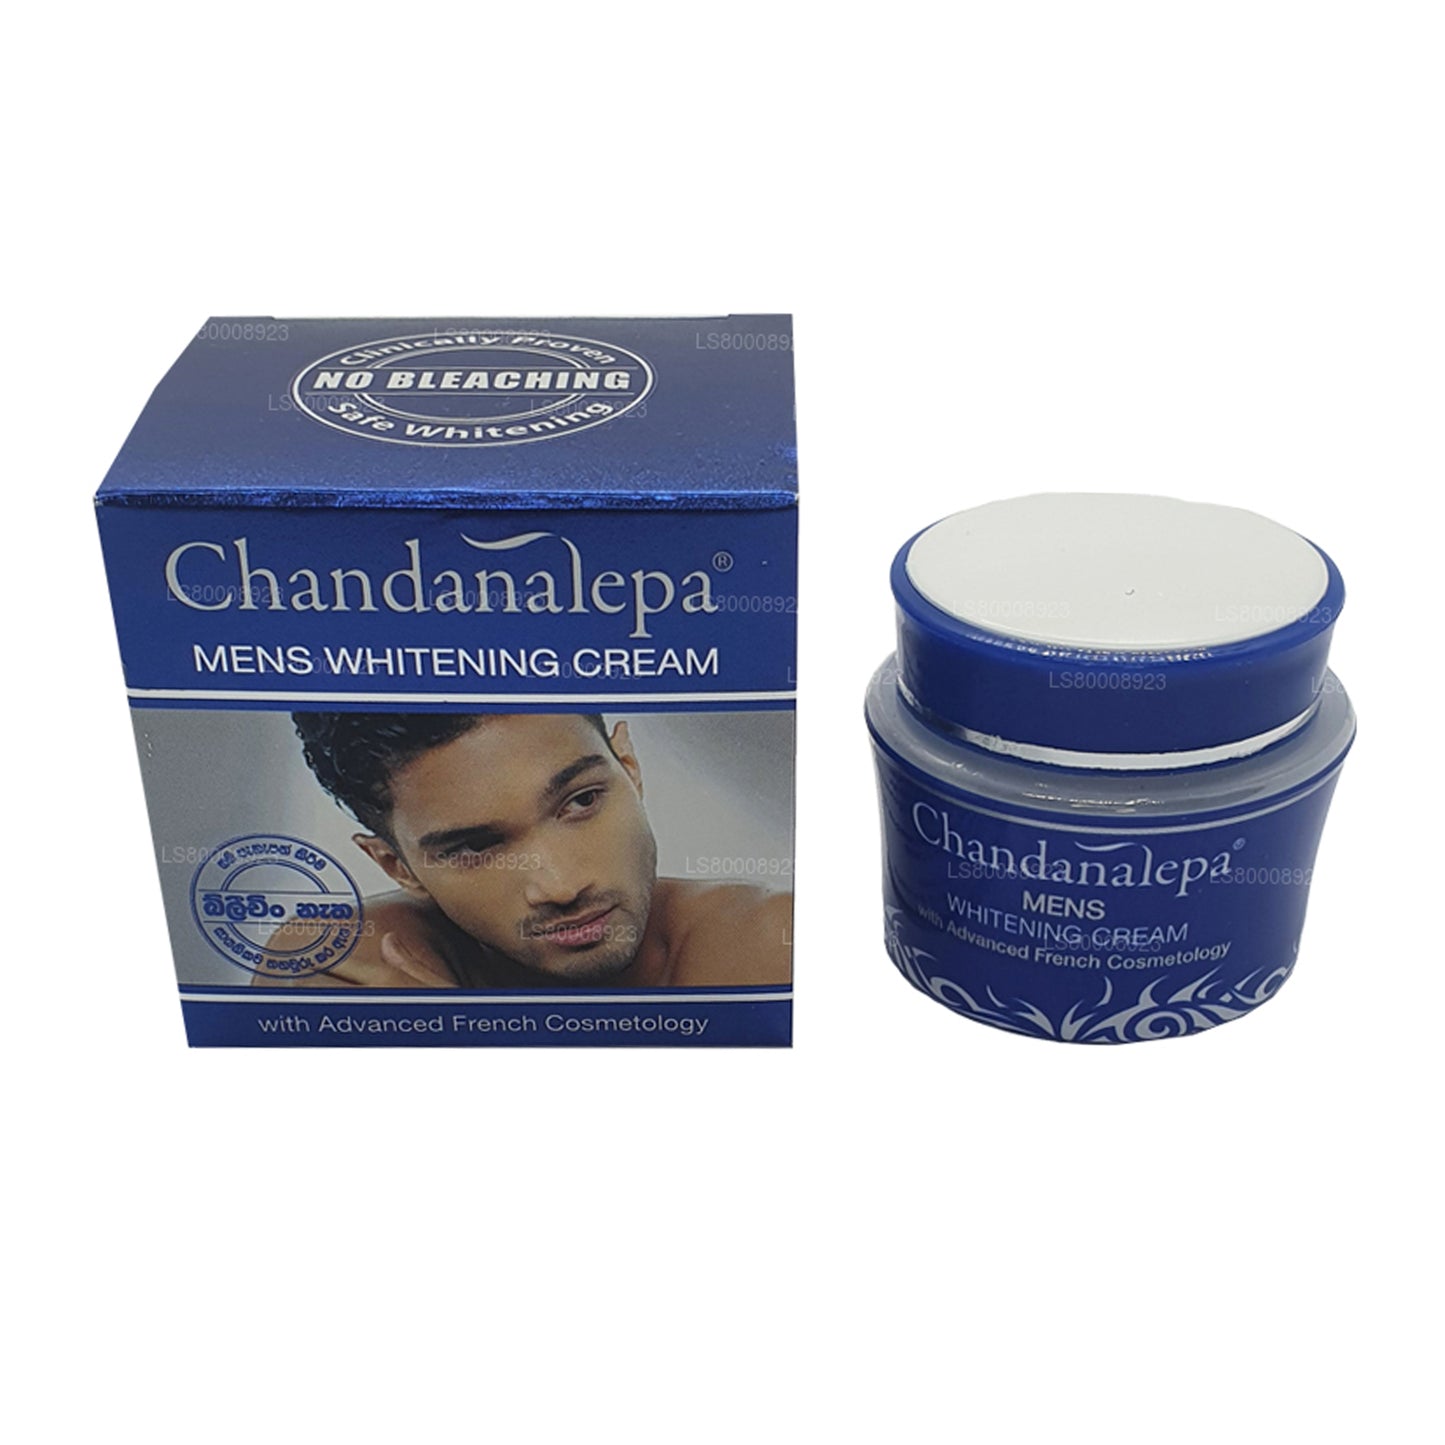 Chandanalepa メンズホワイトニングクリーム (20g)